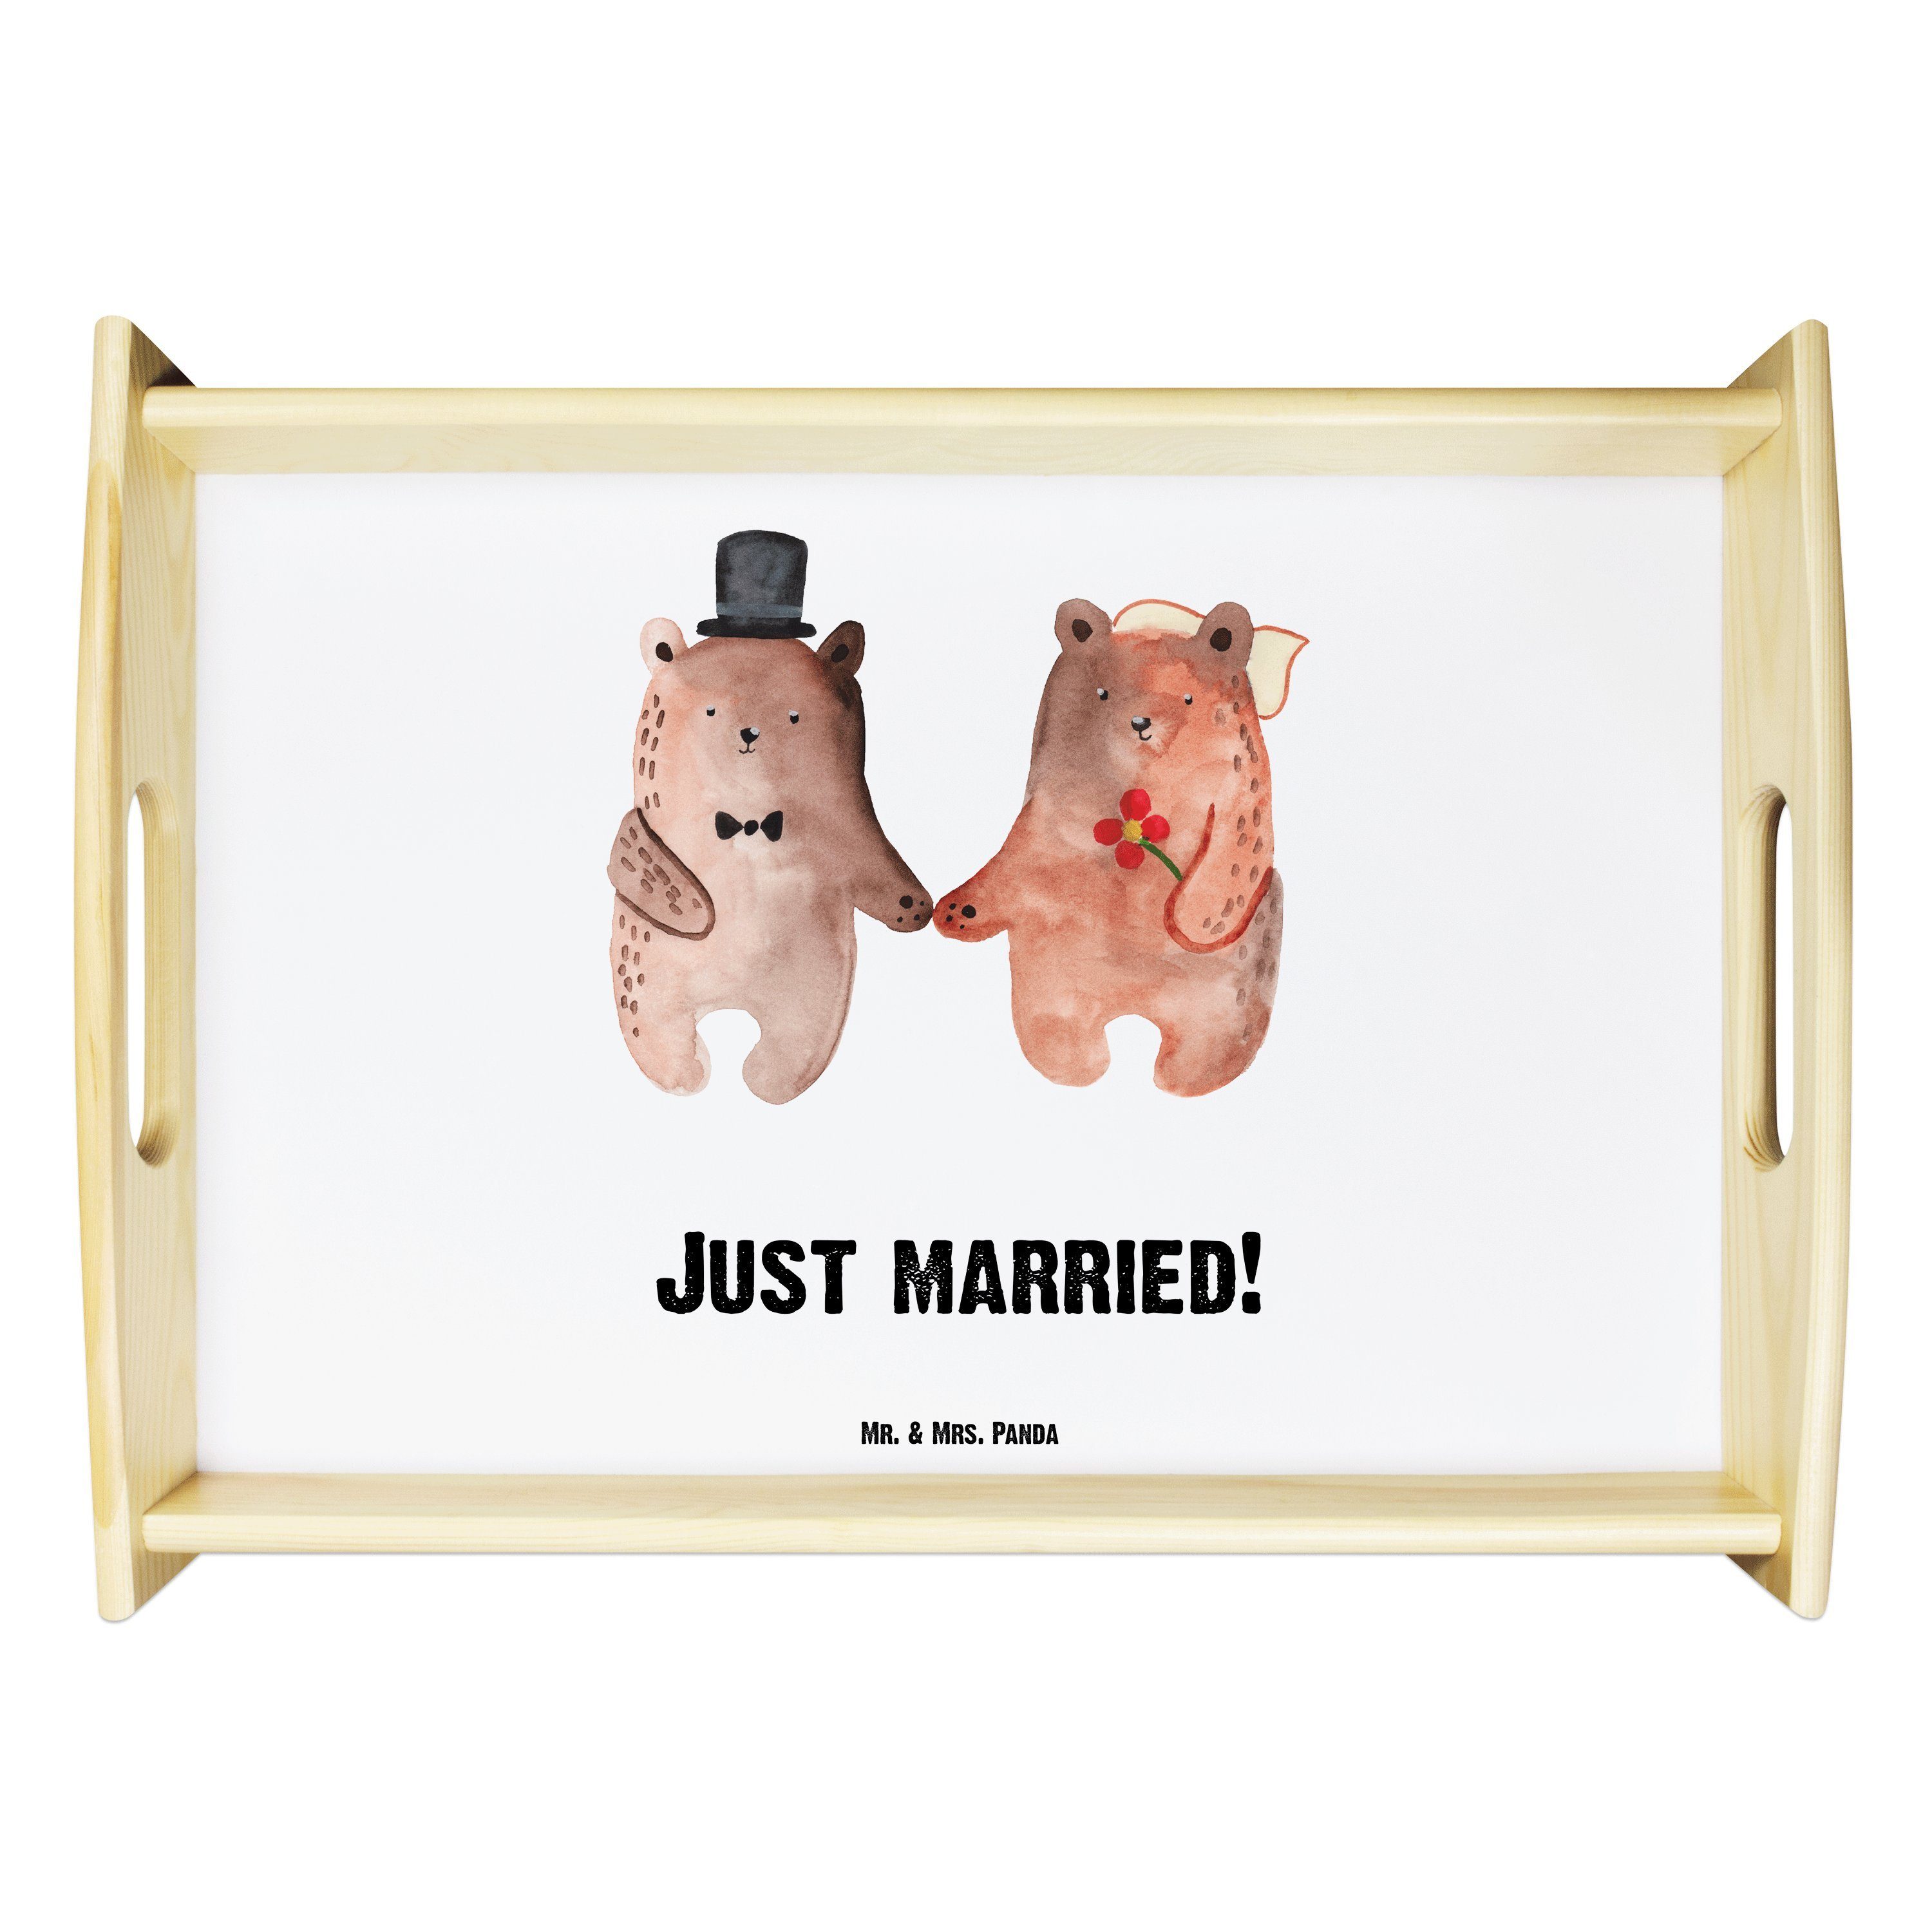 Mr. & Mrs. Panda Tablett Bär Heirat - Weiß - Geschenk, Dekotablett, Küchentablett, Teddy, Bär, Echtholz lasiert, (1-tlg)